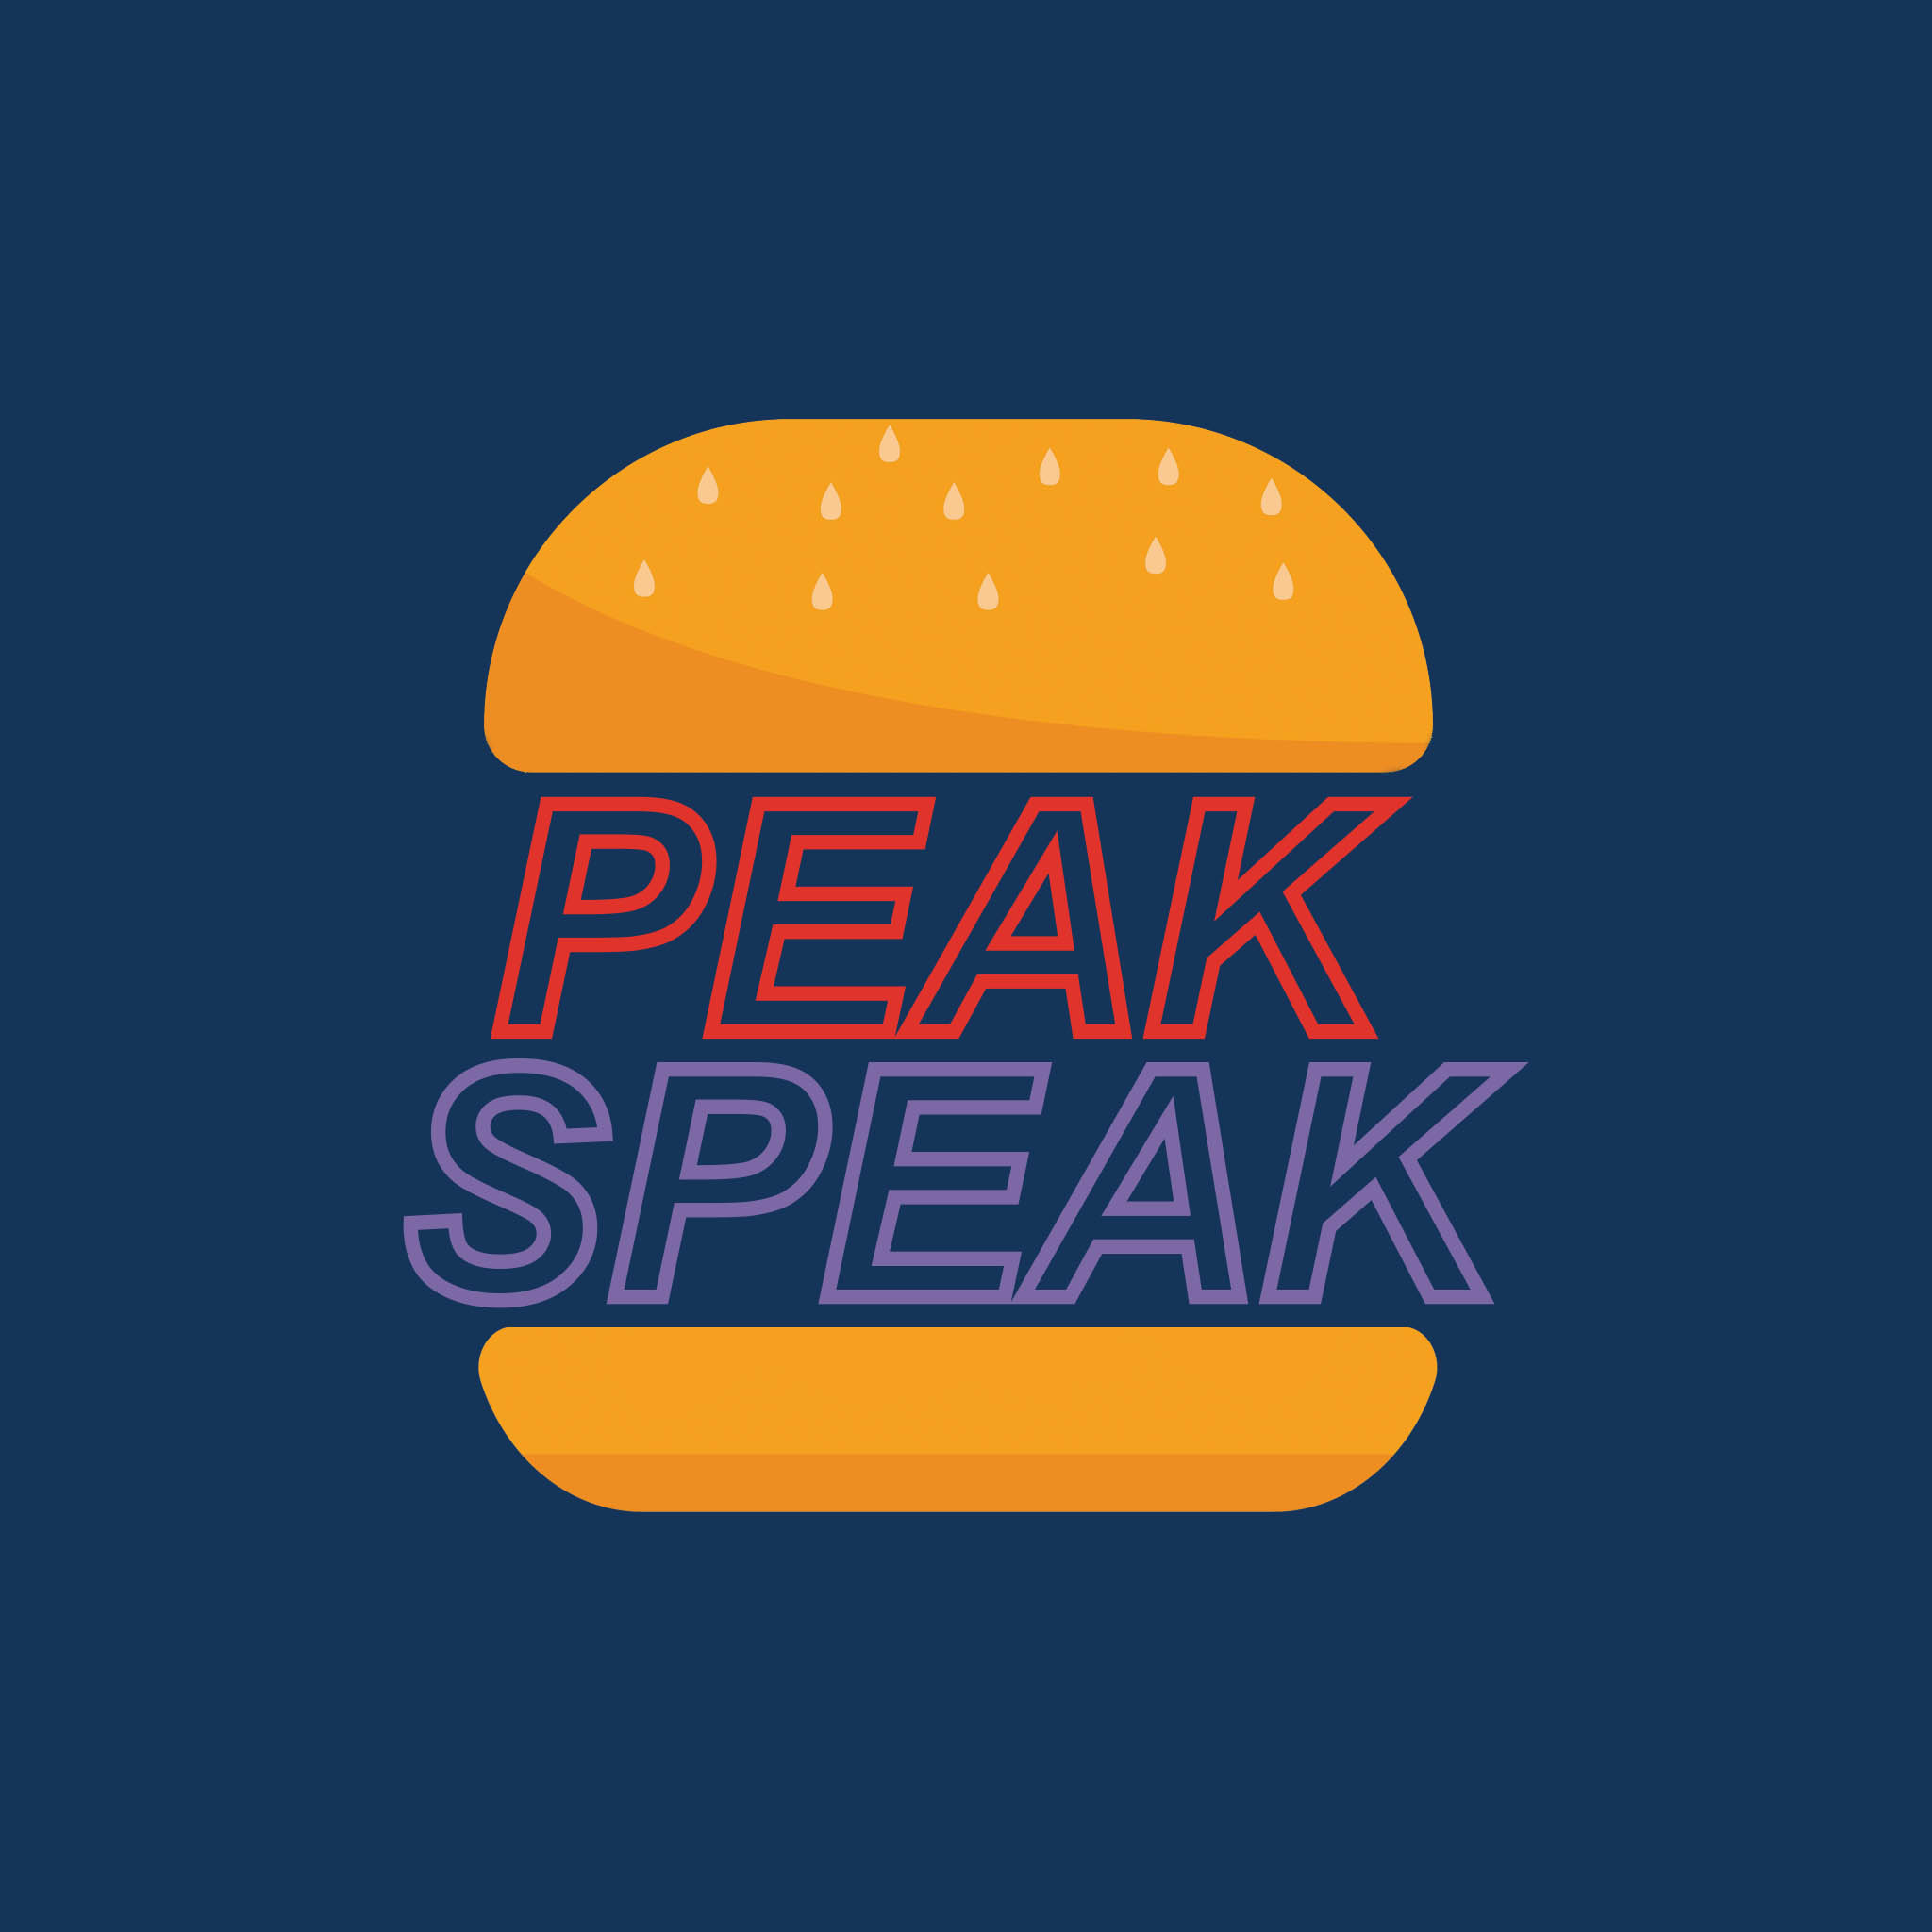 Peak Speak Episode 06: We talk with Physical Therapist Dr. Quinn Henoch